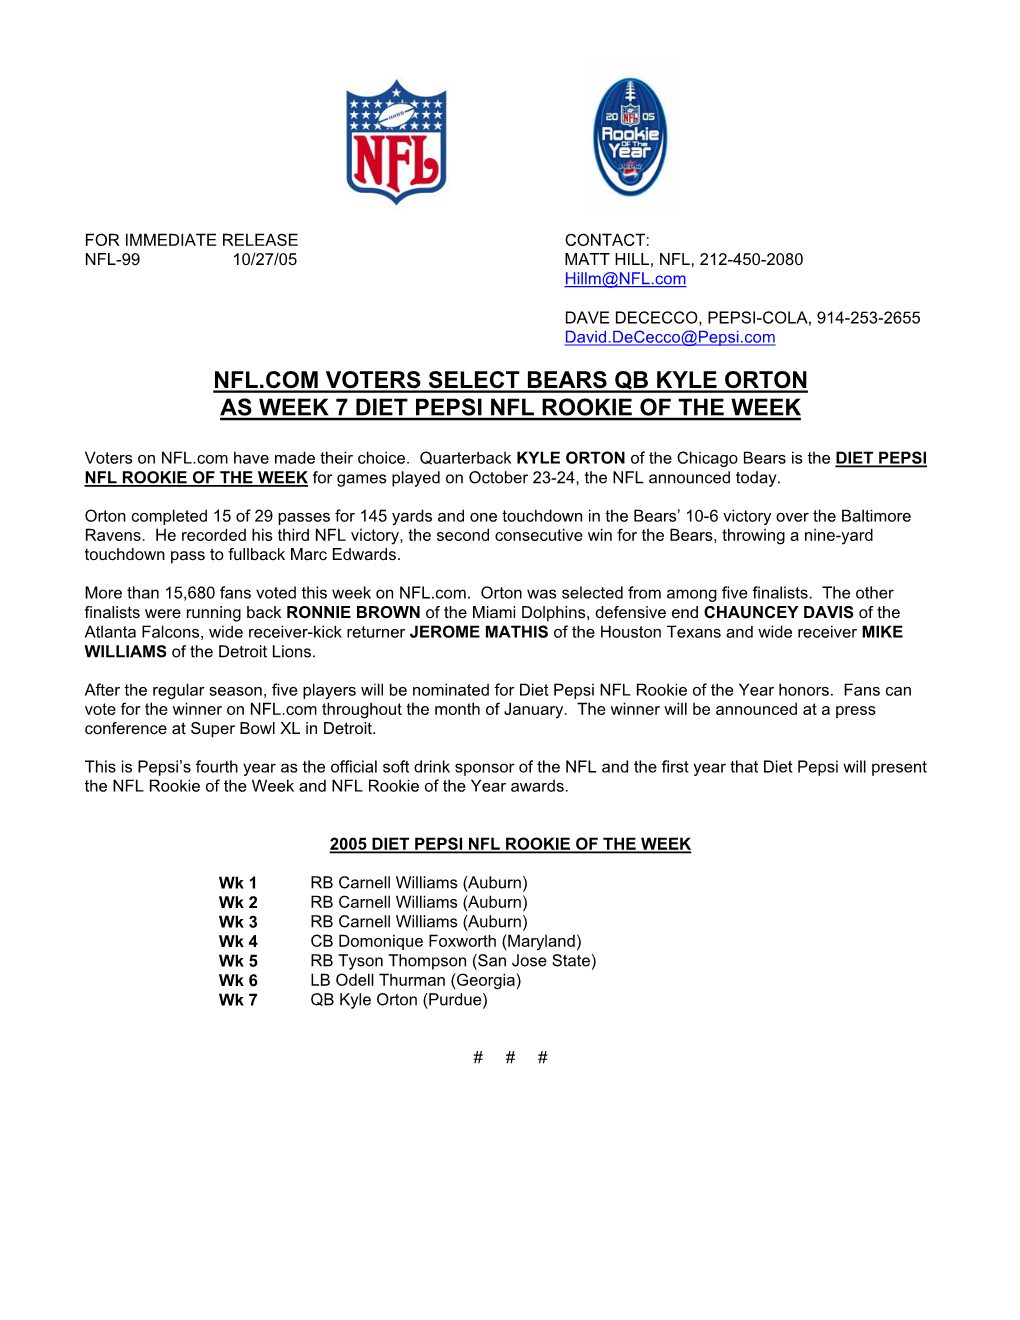 Nfl.Com Voters Select Bears Qb Kyle Orton As Week 7 Diet Pepsi Nfl Rookie of the Week